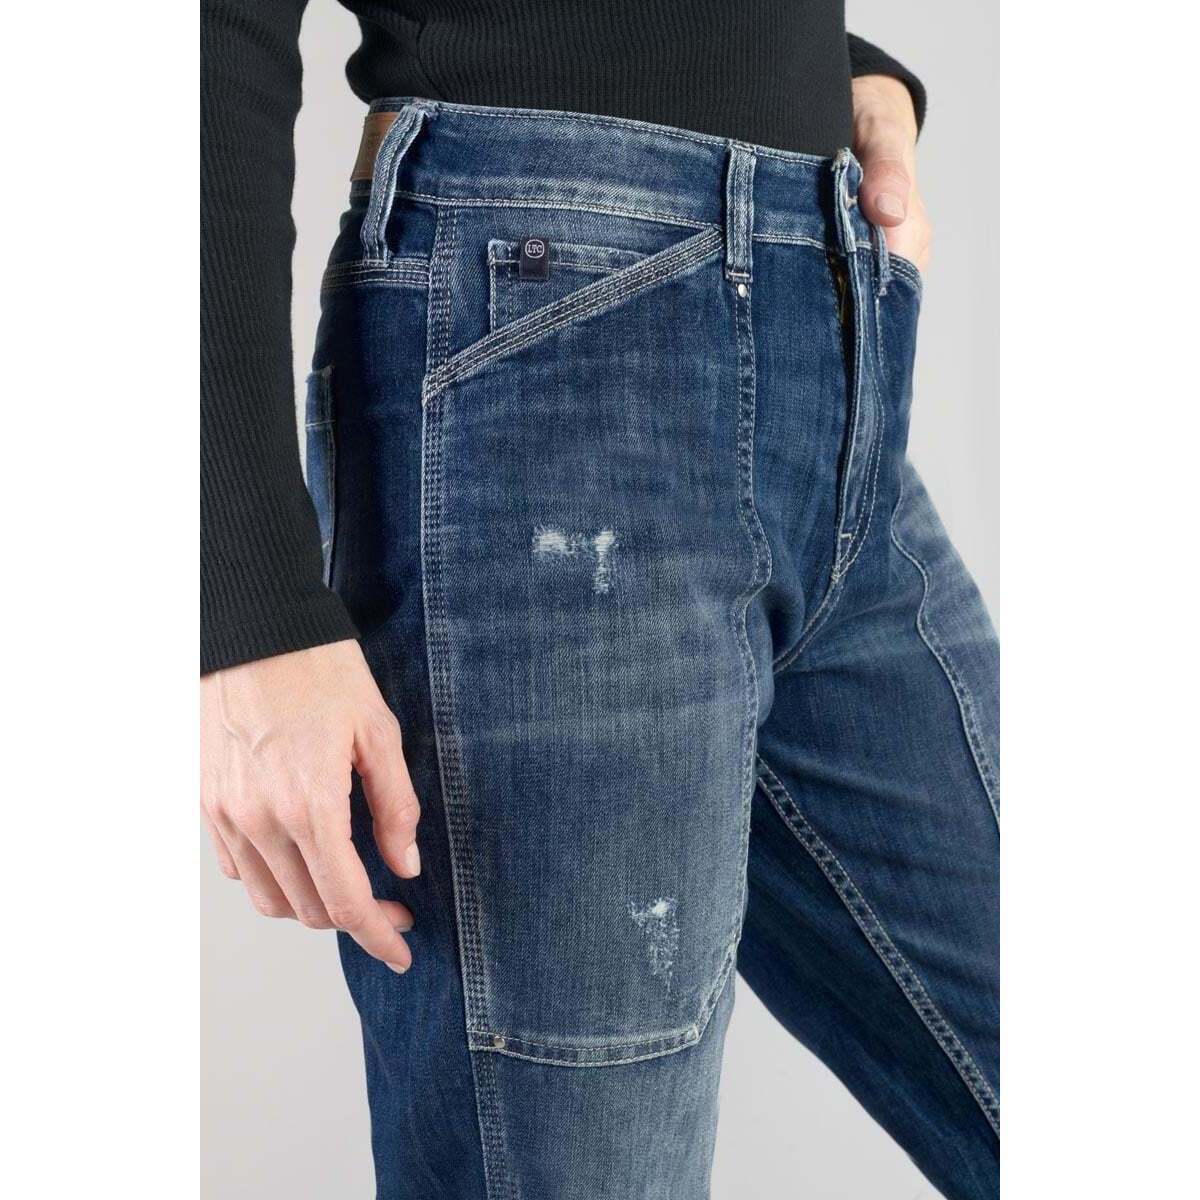 Le Temps des Cerises Bleu Union 400/60 girlfriend taille haute jeans destroy bleu RFIriUAR